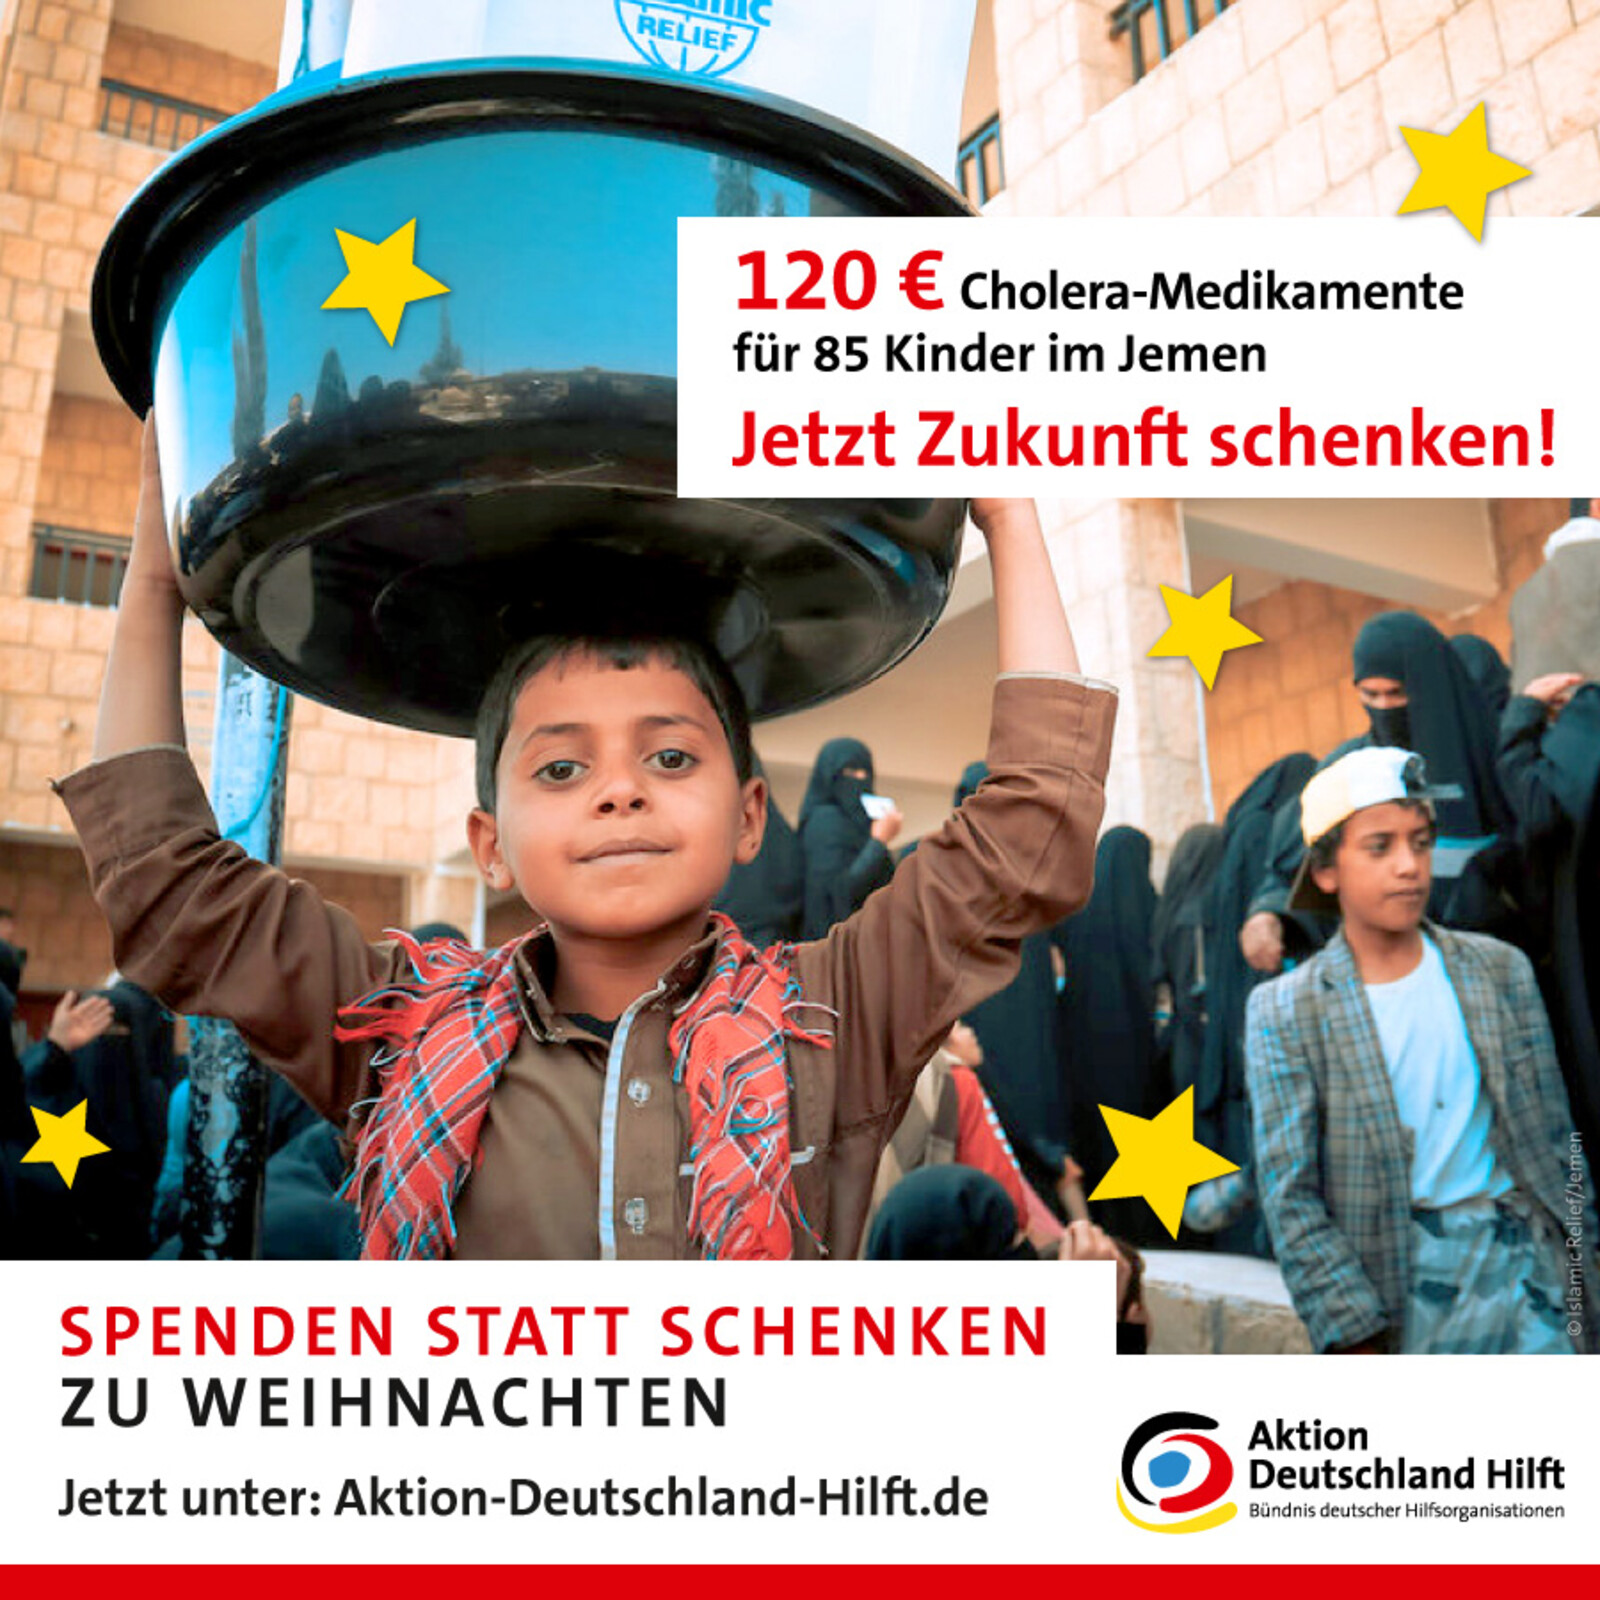 Mit 120 Euro bekommen 85 Kinder im Jemen lebensrettende Medikamente gegen Cholera - jetzt Zukunft schenken!